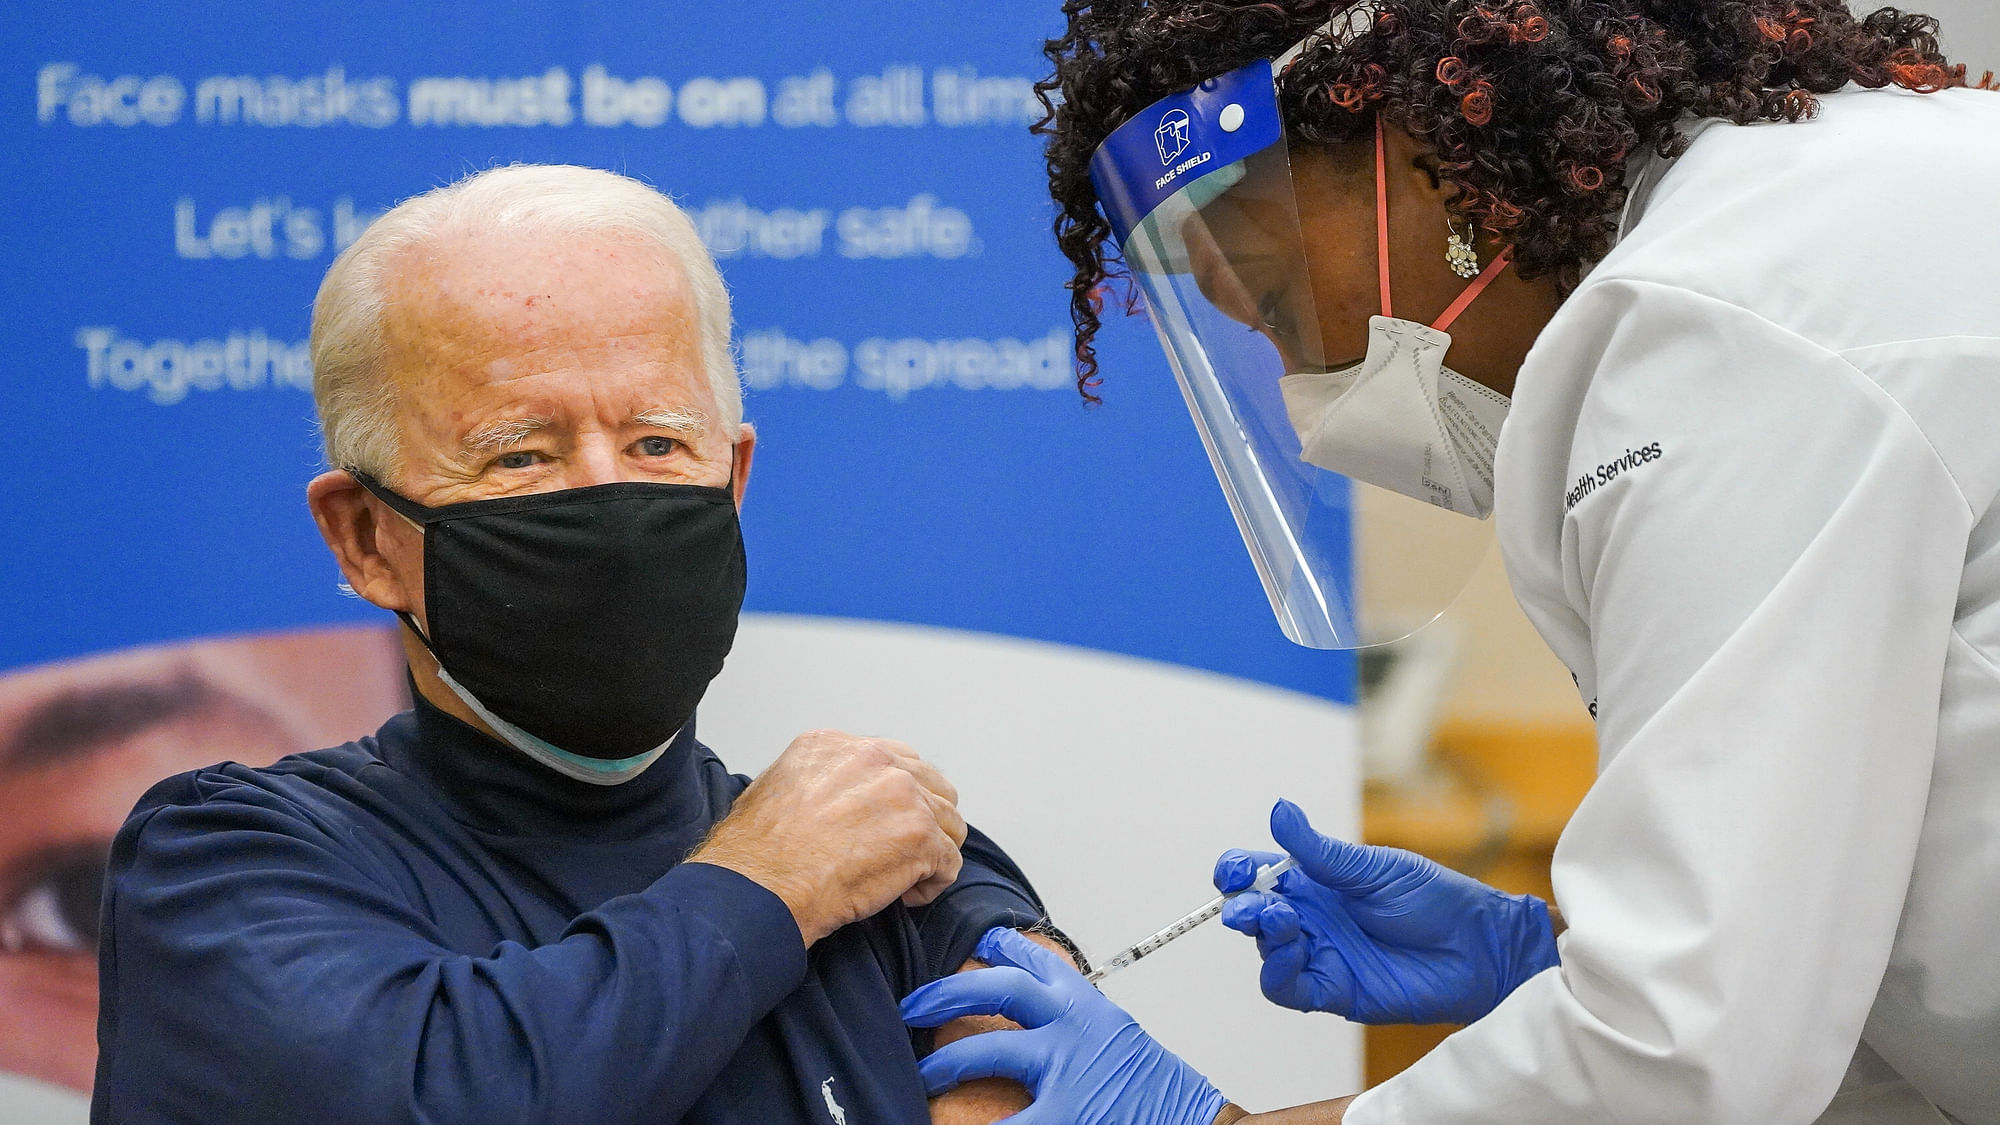 Joe Biden receiving the Pfizer vaccine